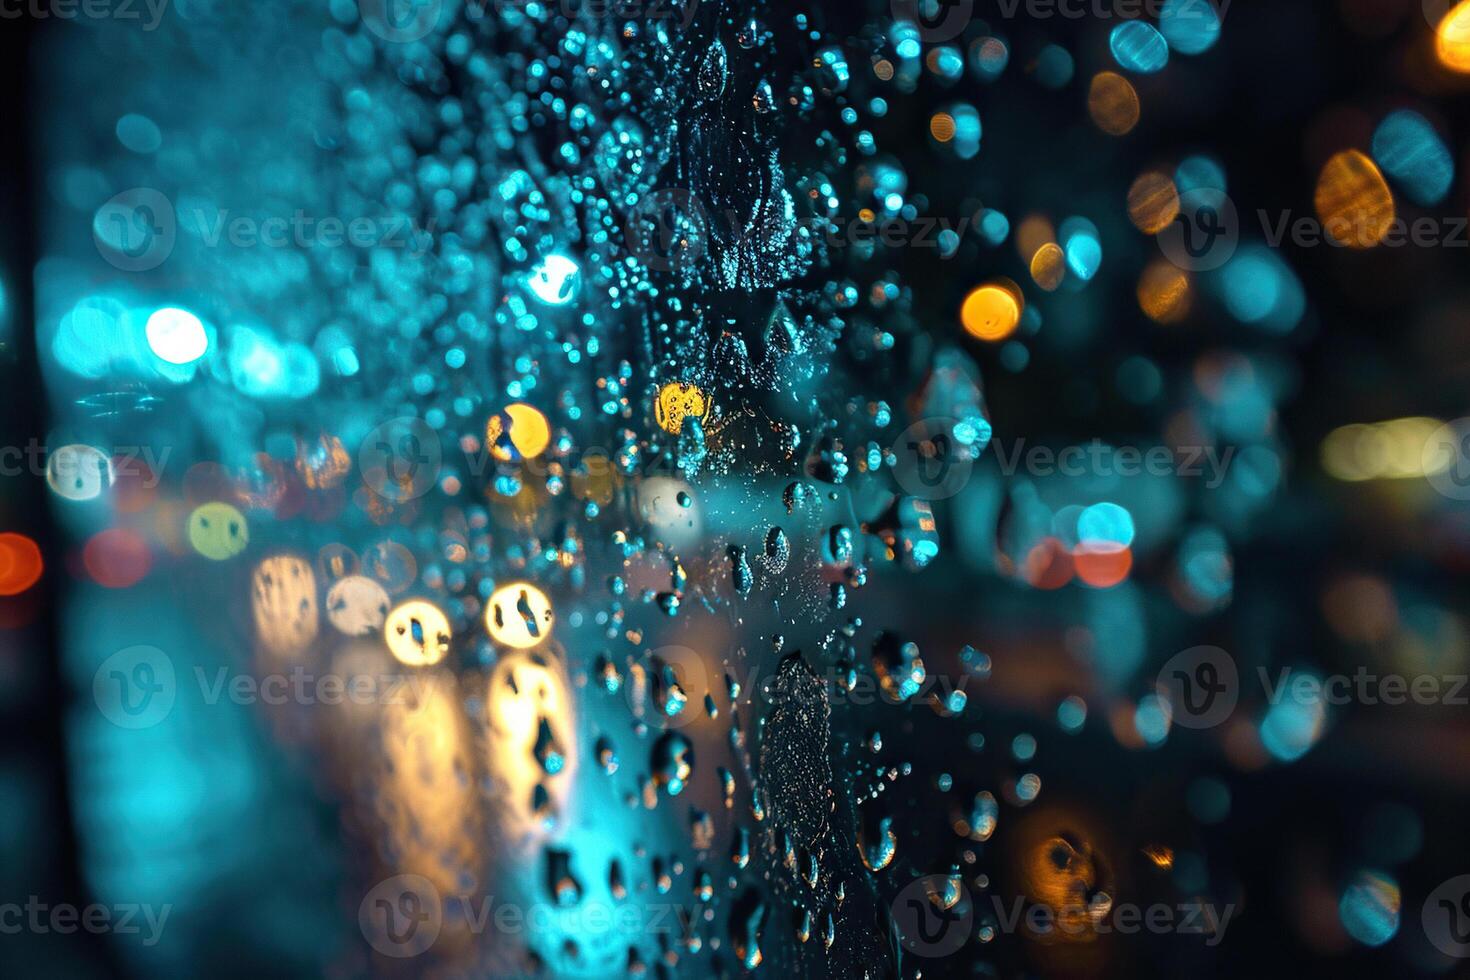 groot druppels van regen Aan de glas of kap van een auto met de lucht weerspiegeld. gegenereerd door kunstmatig intelligentie- foto